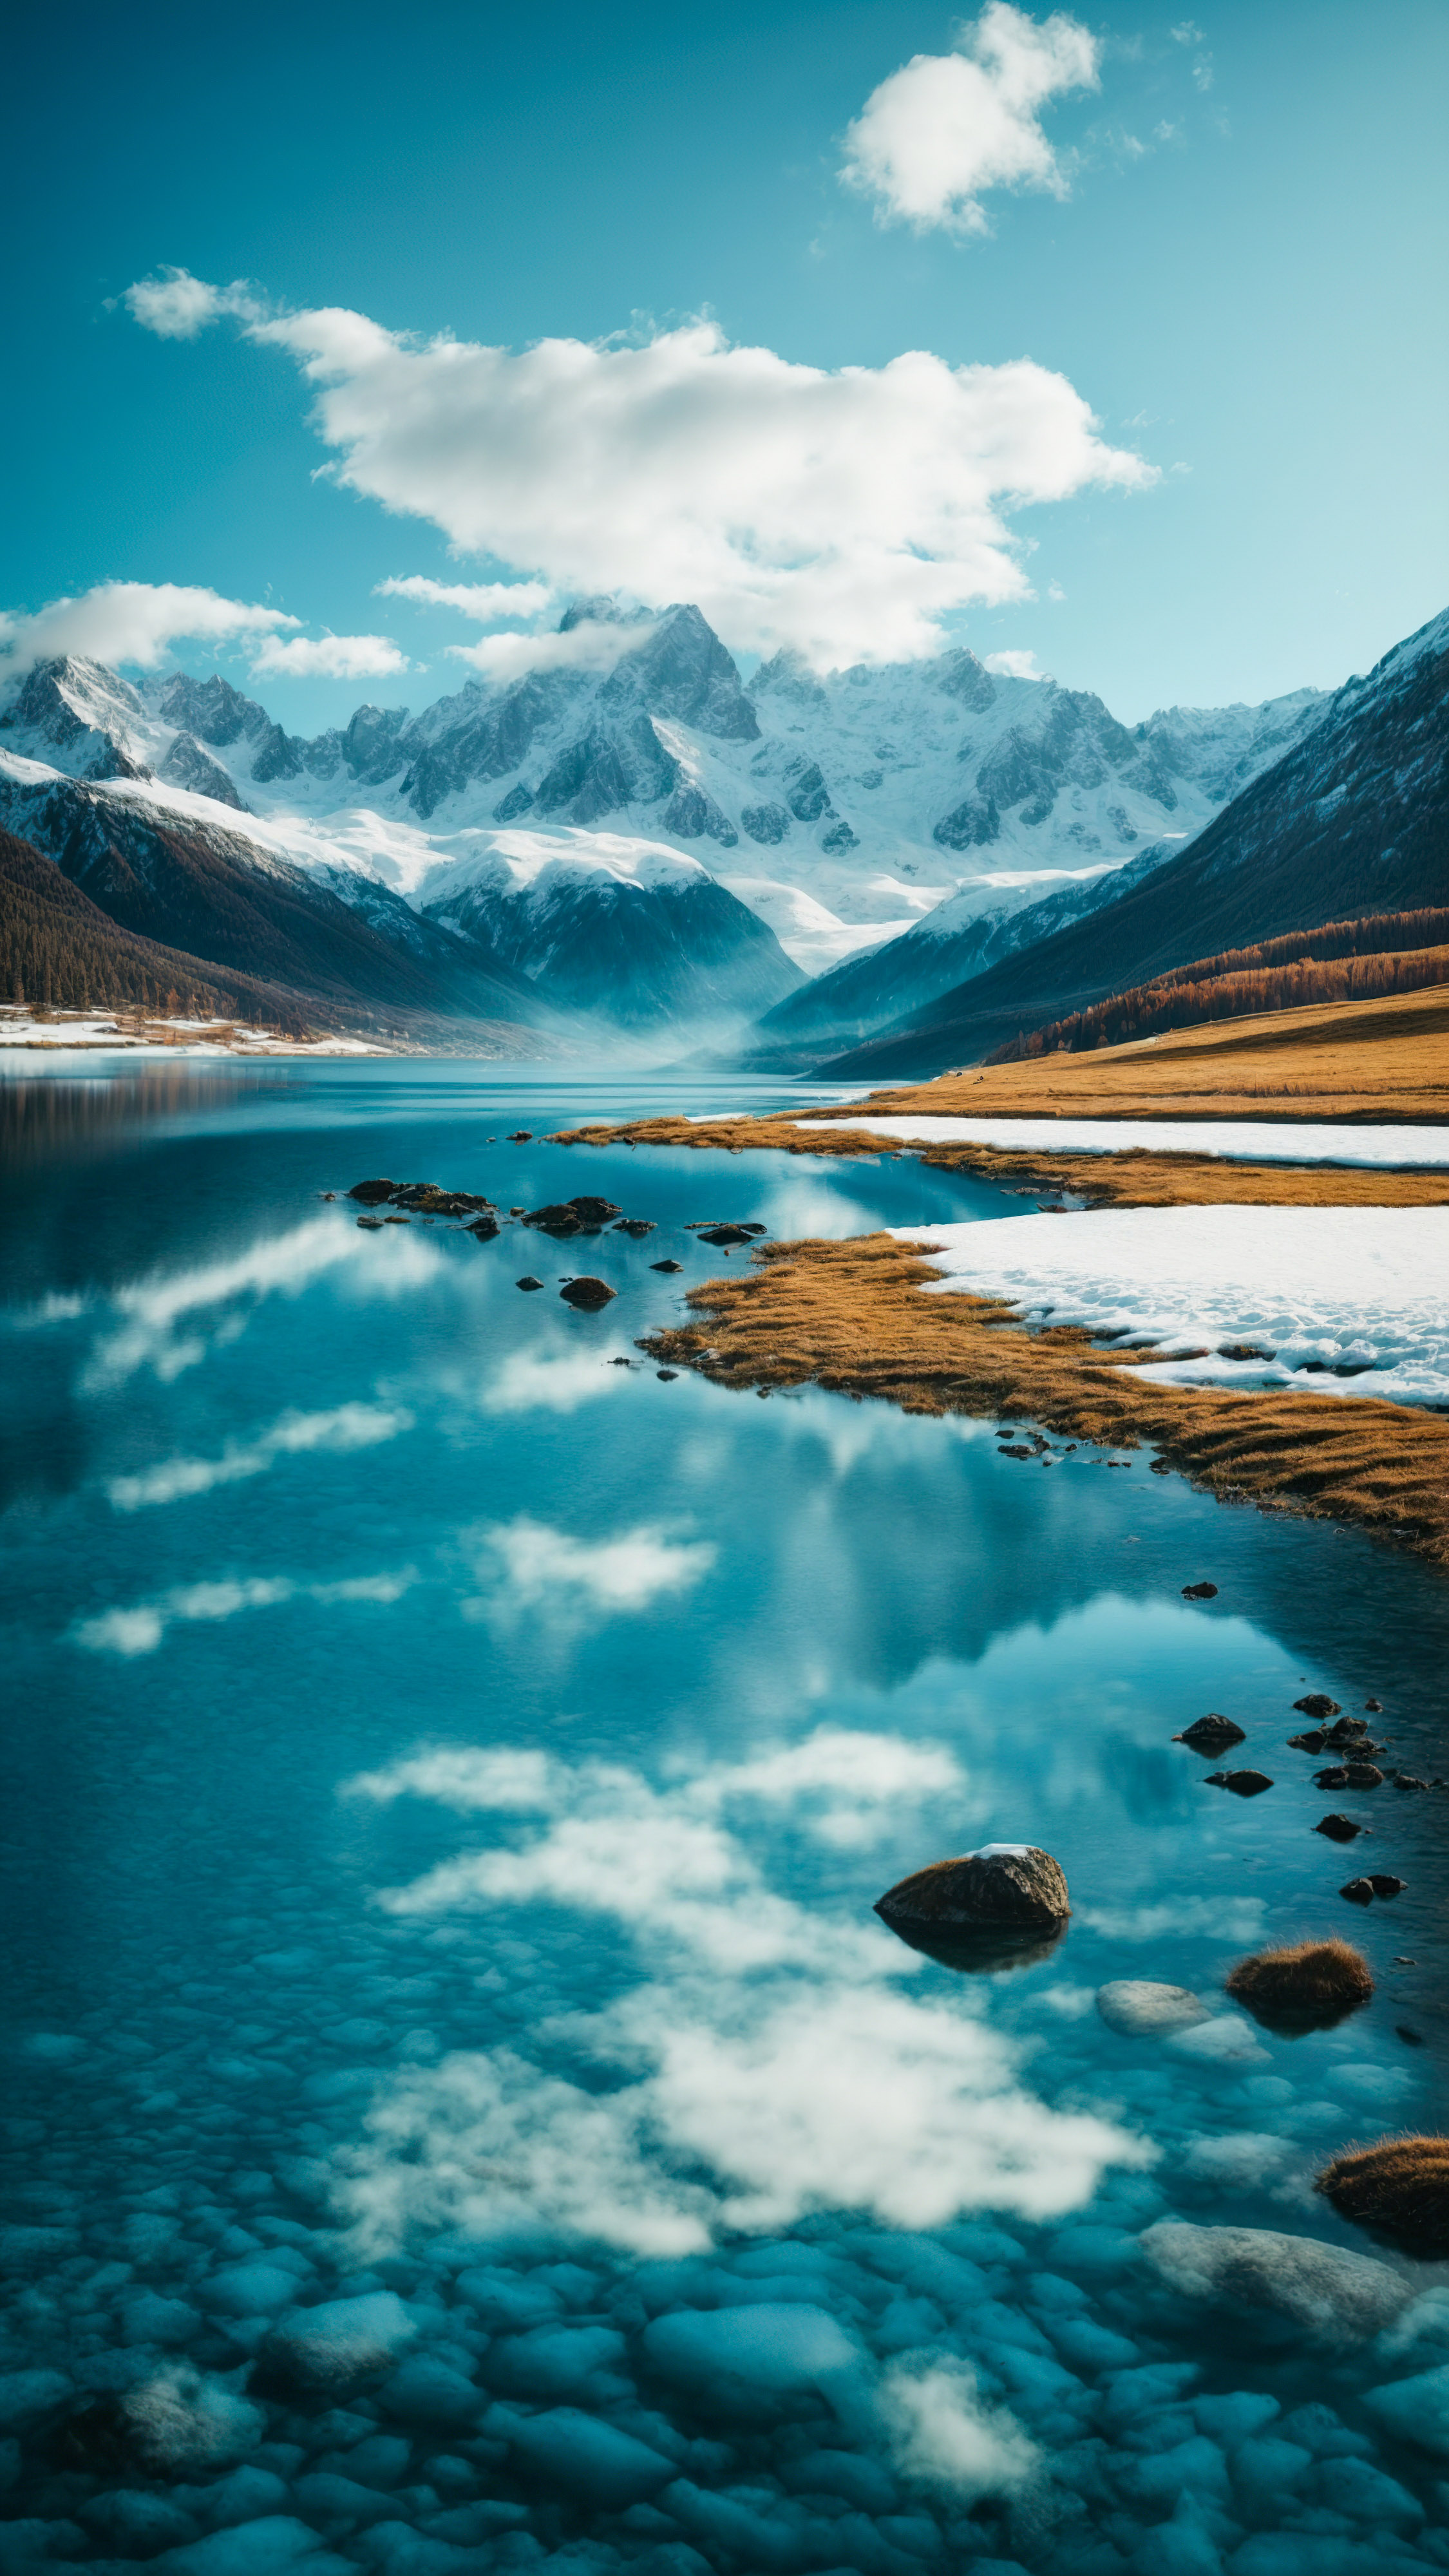 GLaissez-vous captiver par la vue panoramique des montagnes enneigées et du ciel bleu, avec un lac calme reflétant le paysage, avec notre fond d'écran pour iPhone montagnes.